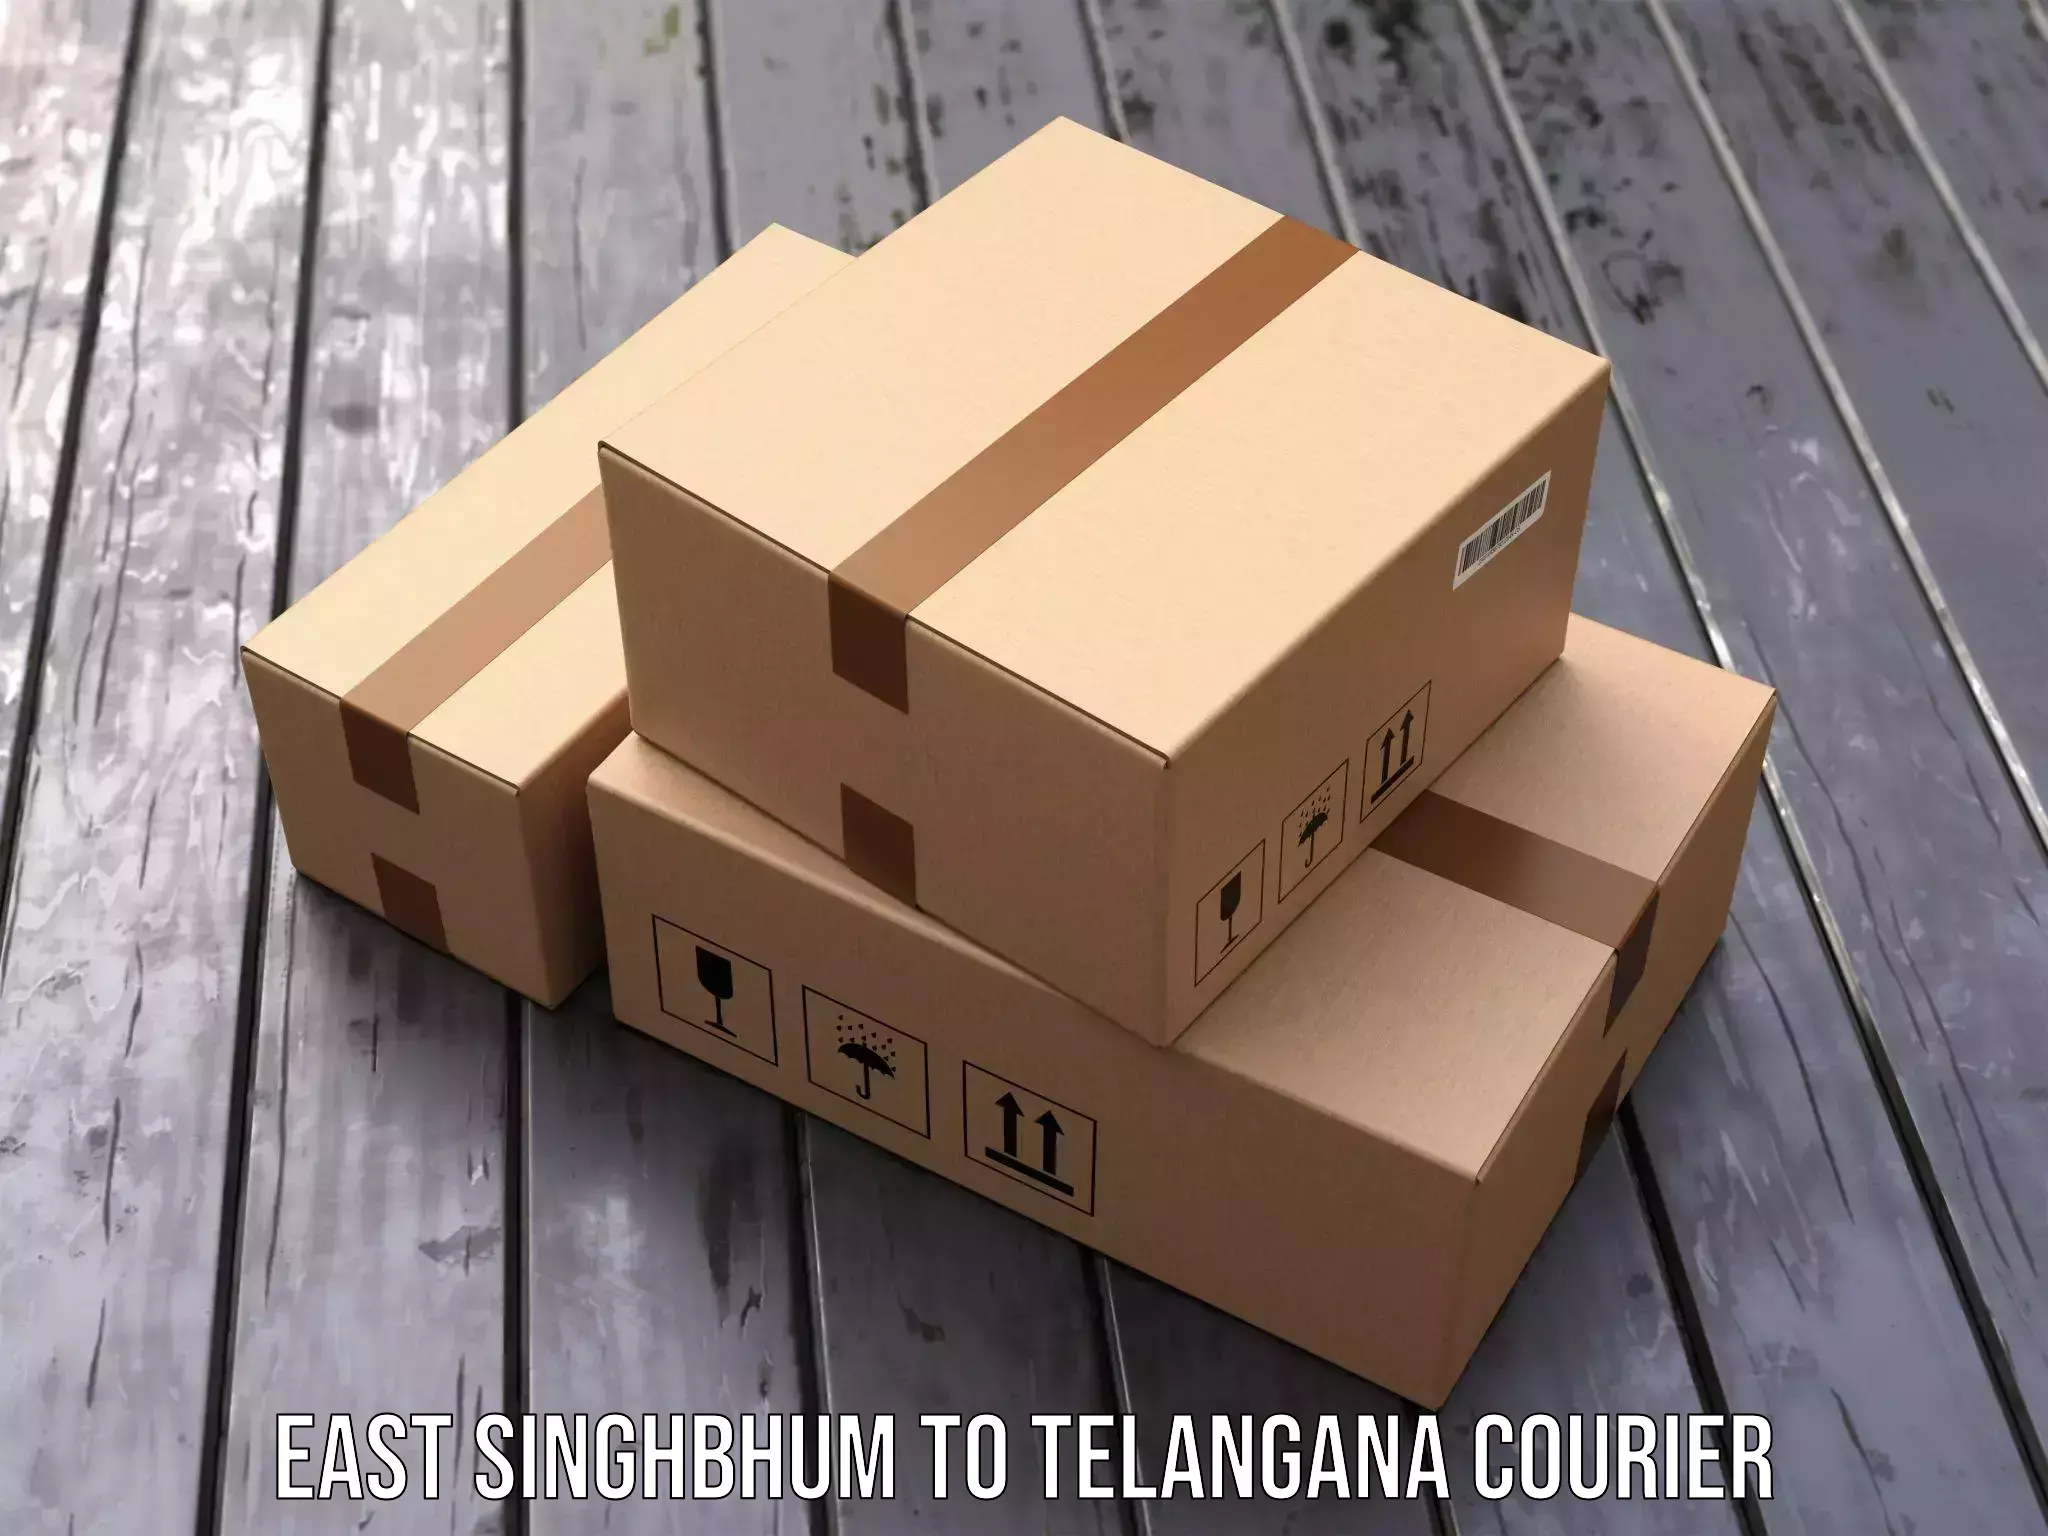 Door-to-door freight service East Singhbhum to Alair